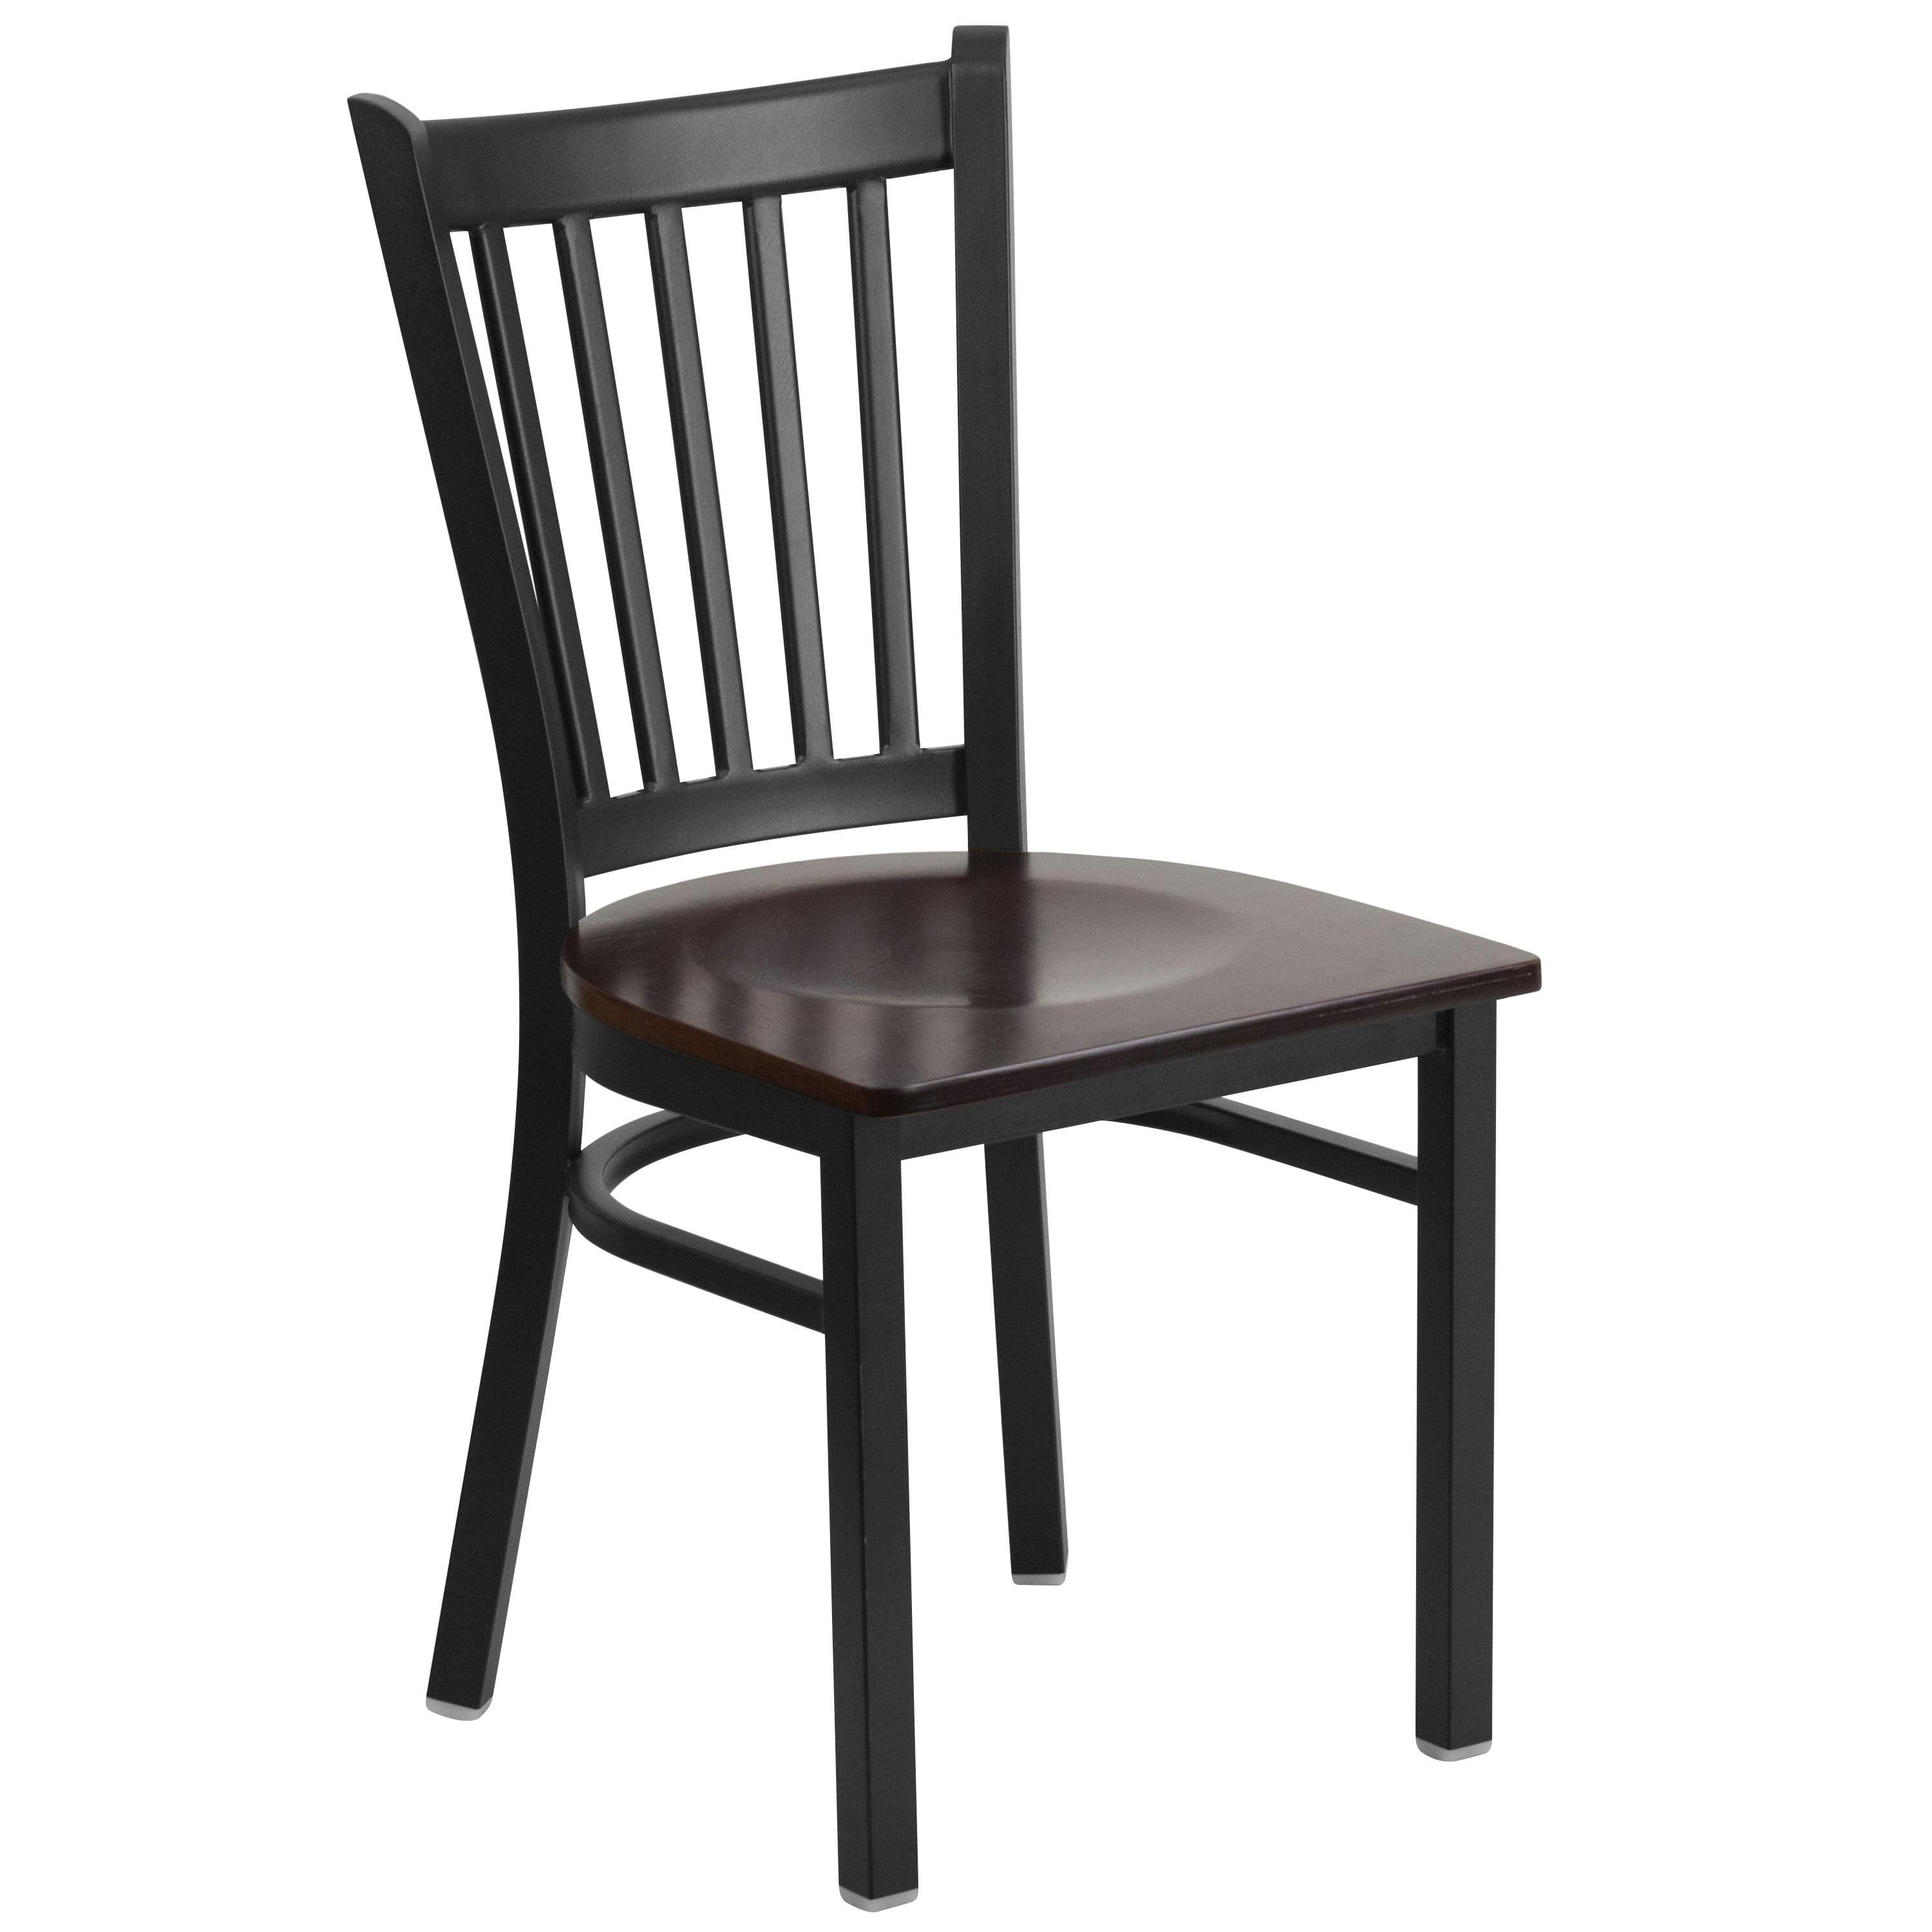 Windsor High Slat Side Chair in Black Steel & Walnut Wood